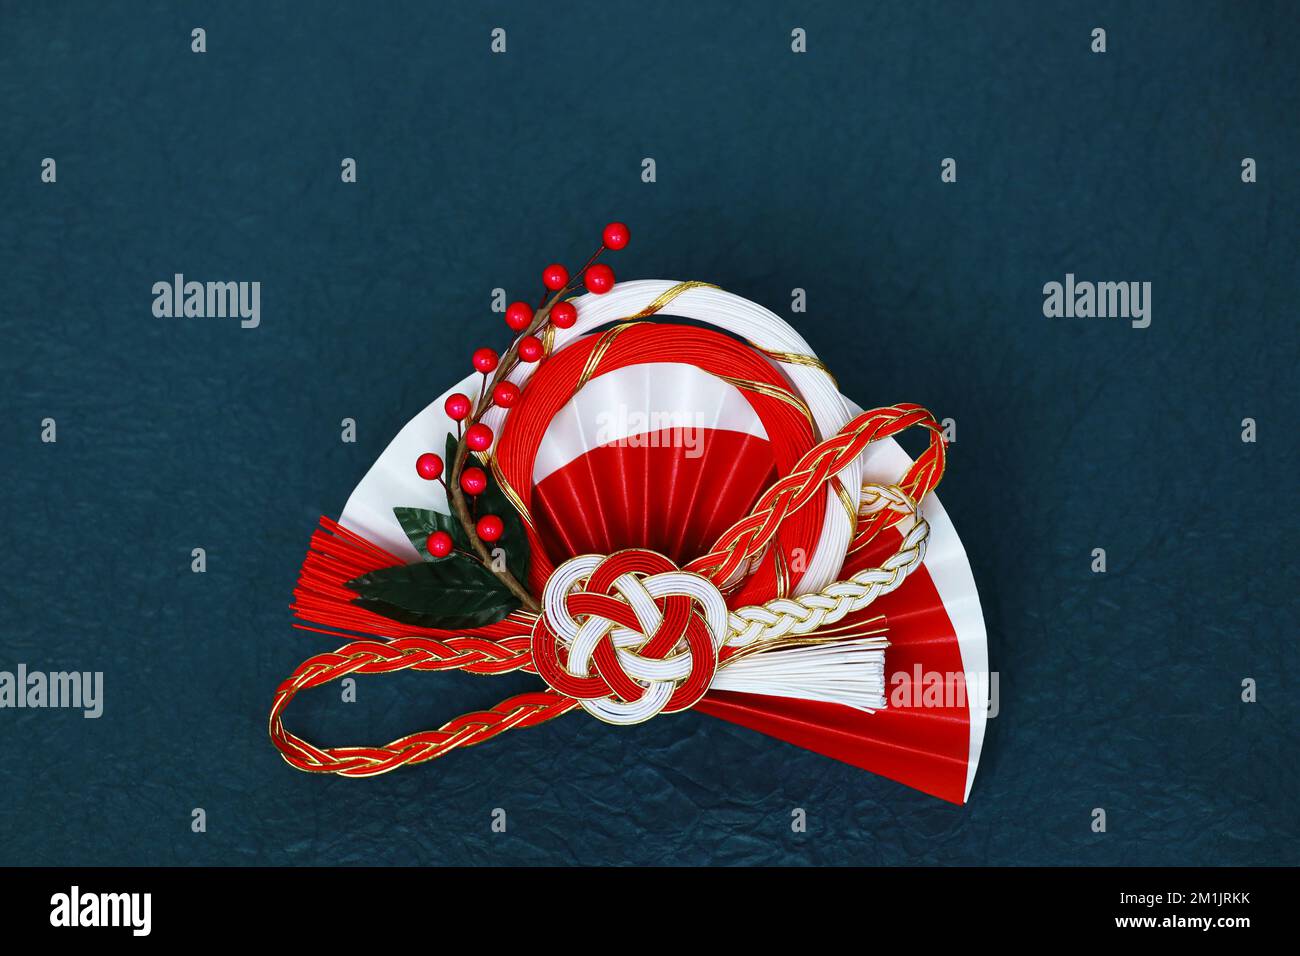 Vita morta delle decorazioni giapponesi di Capodanno come materiale per i biglietti d'auguri di Capodanno Foto Stock